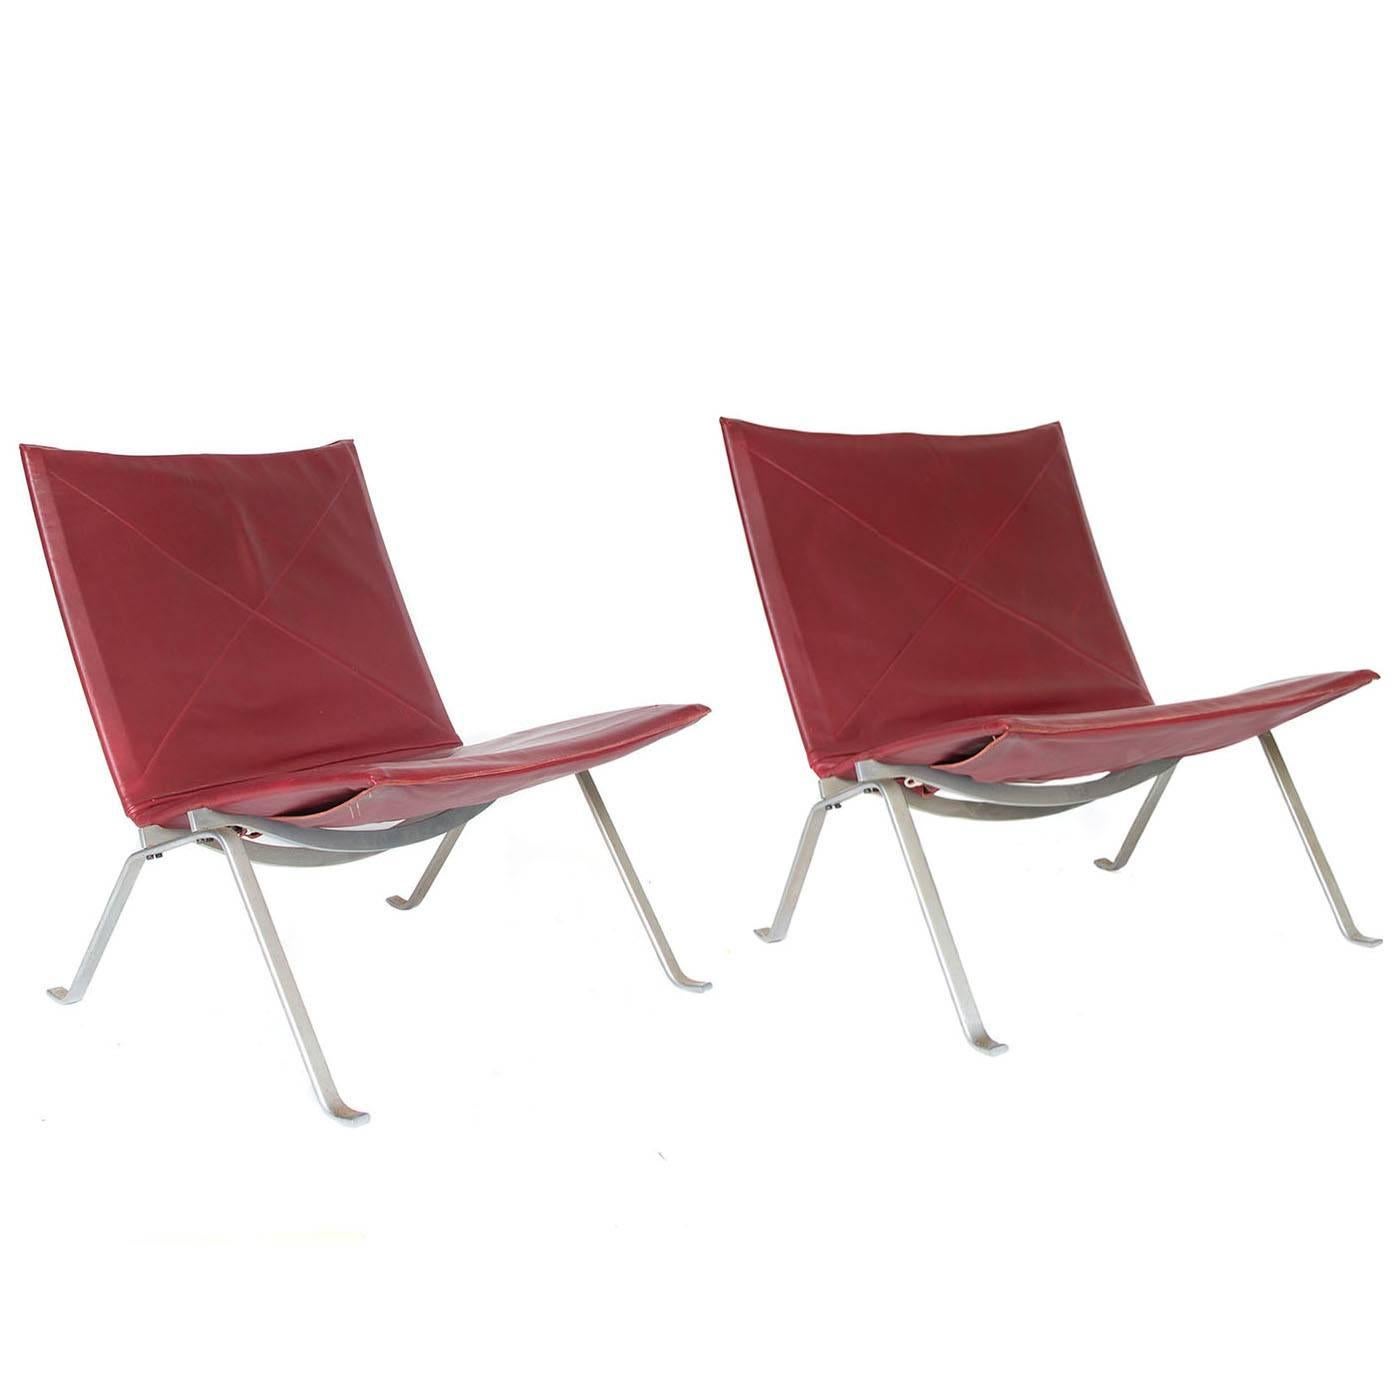 1956, Poul Kjaerholm for E. Kold Christensen, PK22 Lounge Chairs